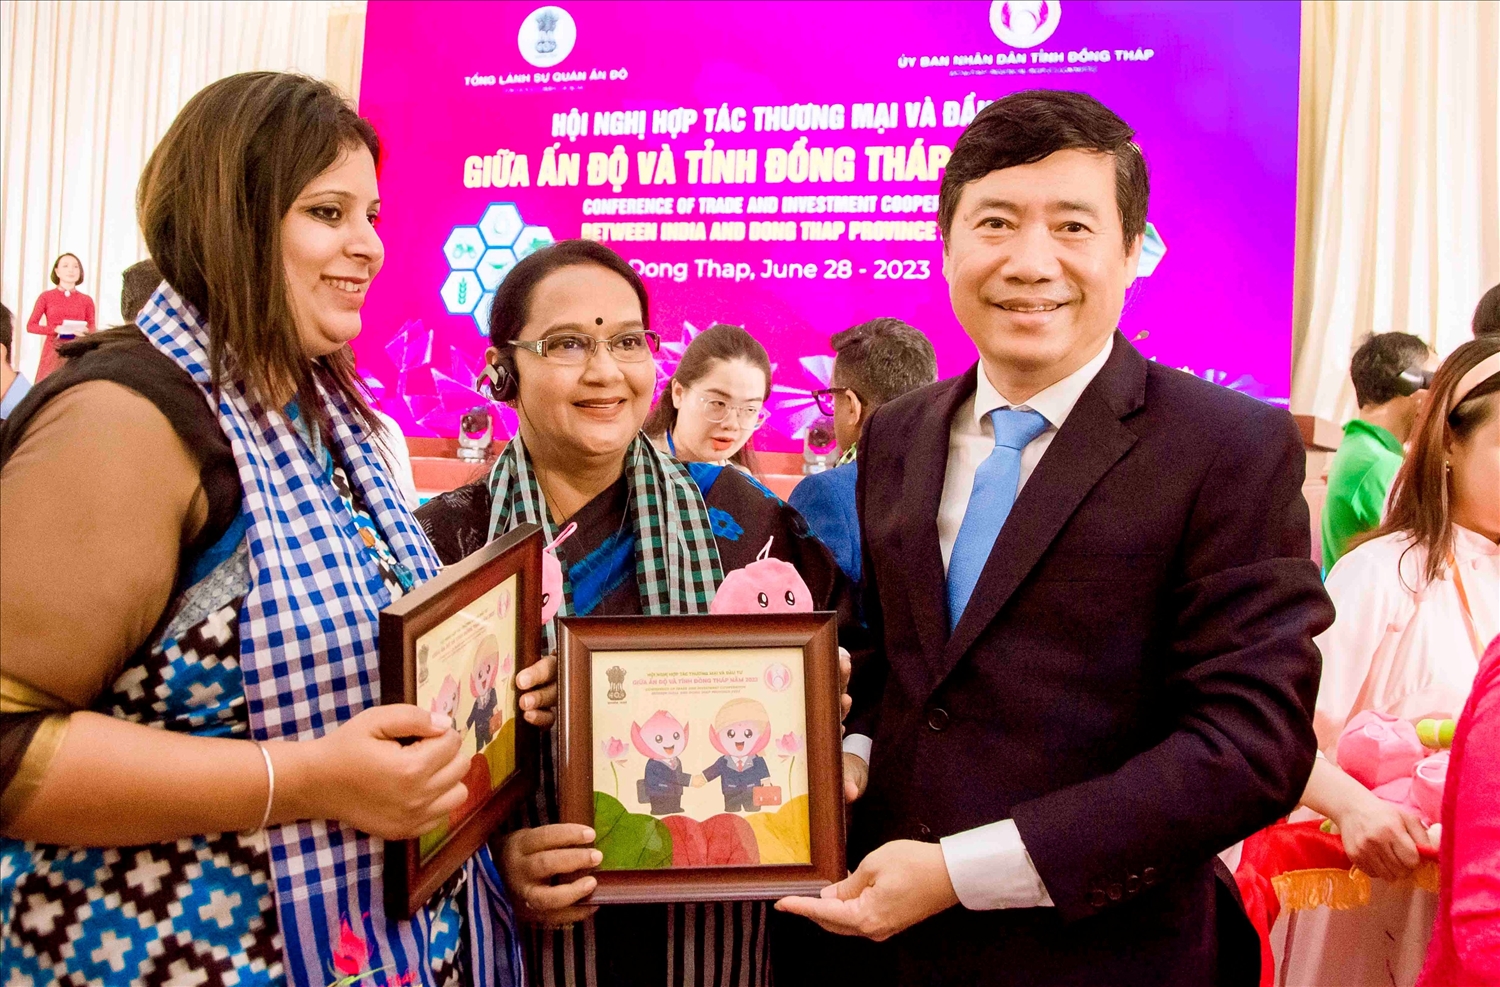 Chủ tịch UBND tỉnh Đồng Tháp Phạm Thiện Nghĩa tặng quà cho qùa đến phu nhân Ngài Madan Mohan Sethi - Tổng lãnh sự quán Ấn Độ tại TP. Hồ Chí Minh